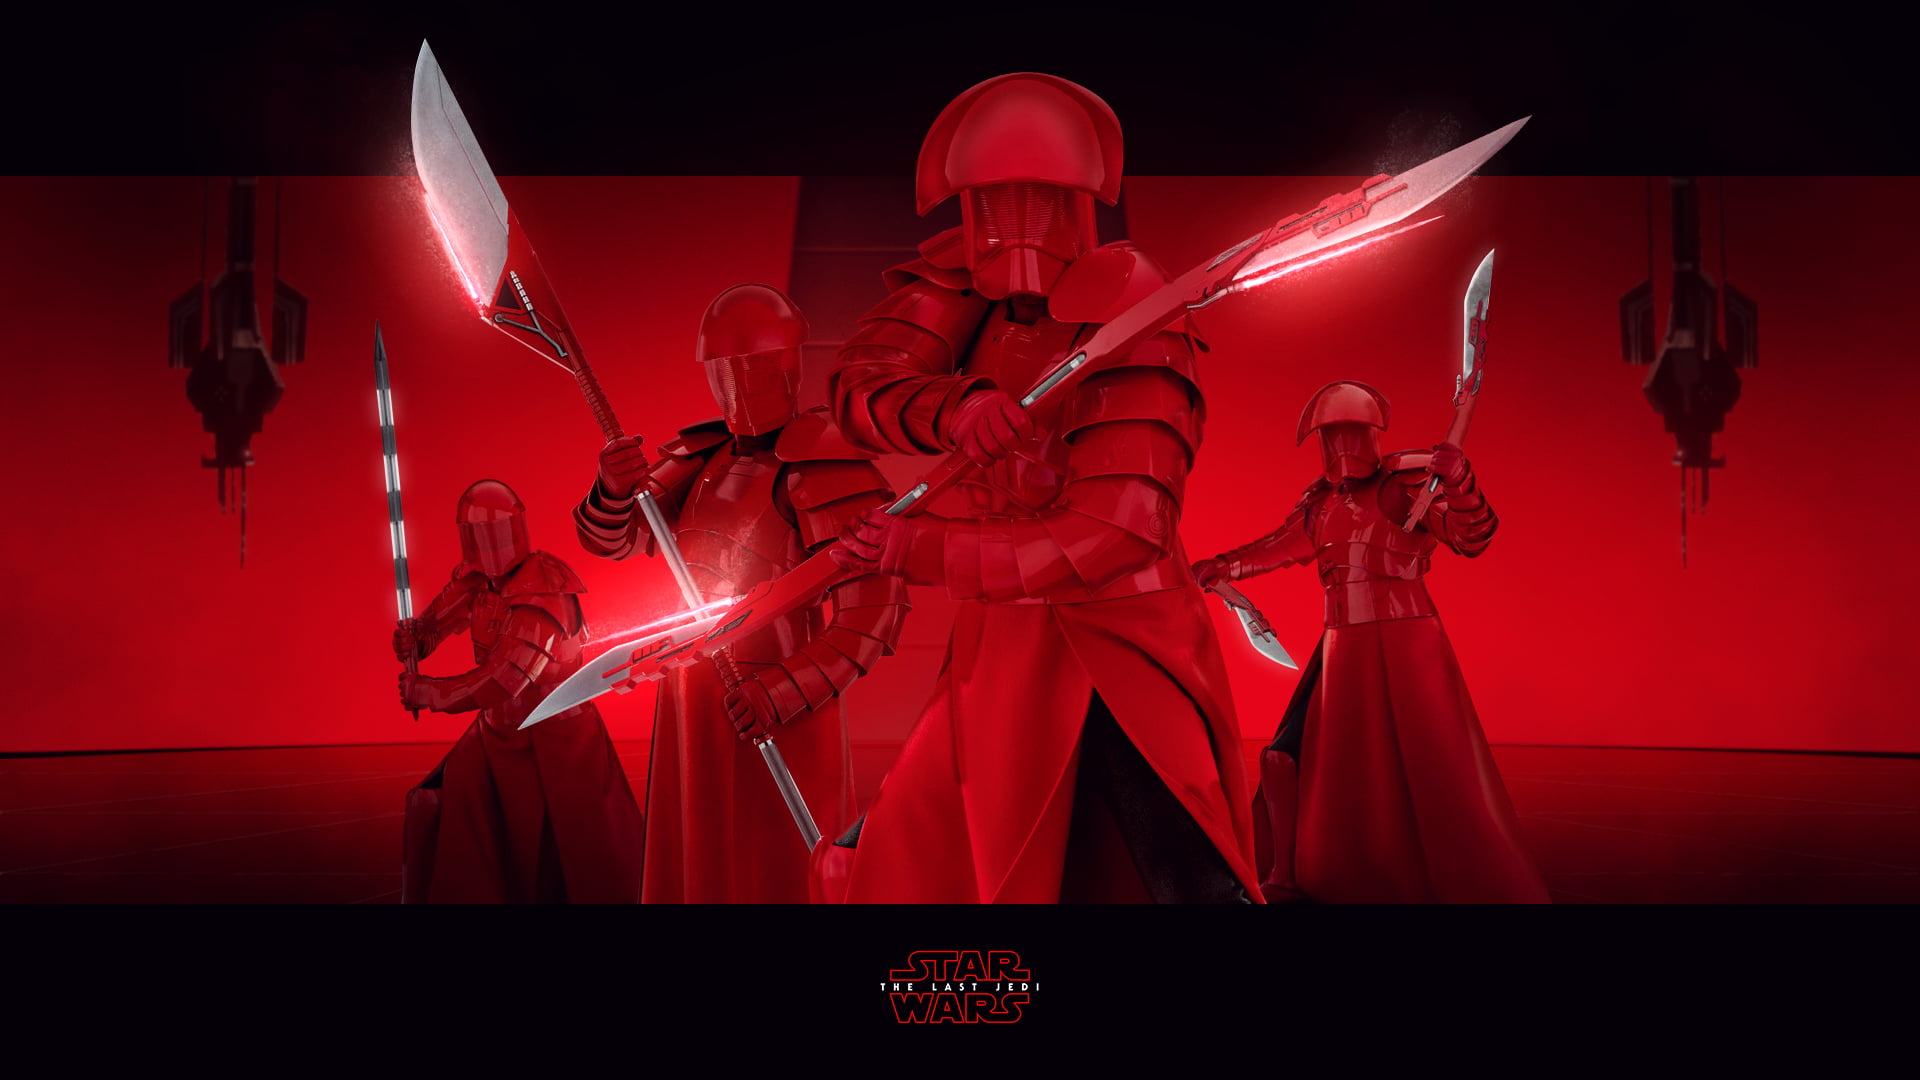 Star Wars digital wallpaper, Star Wars, Star Wars: The Last Jedi, red, The First Order